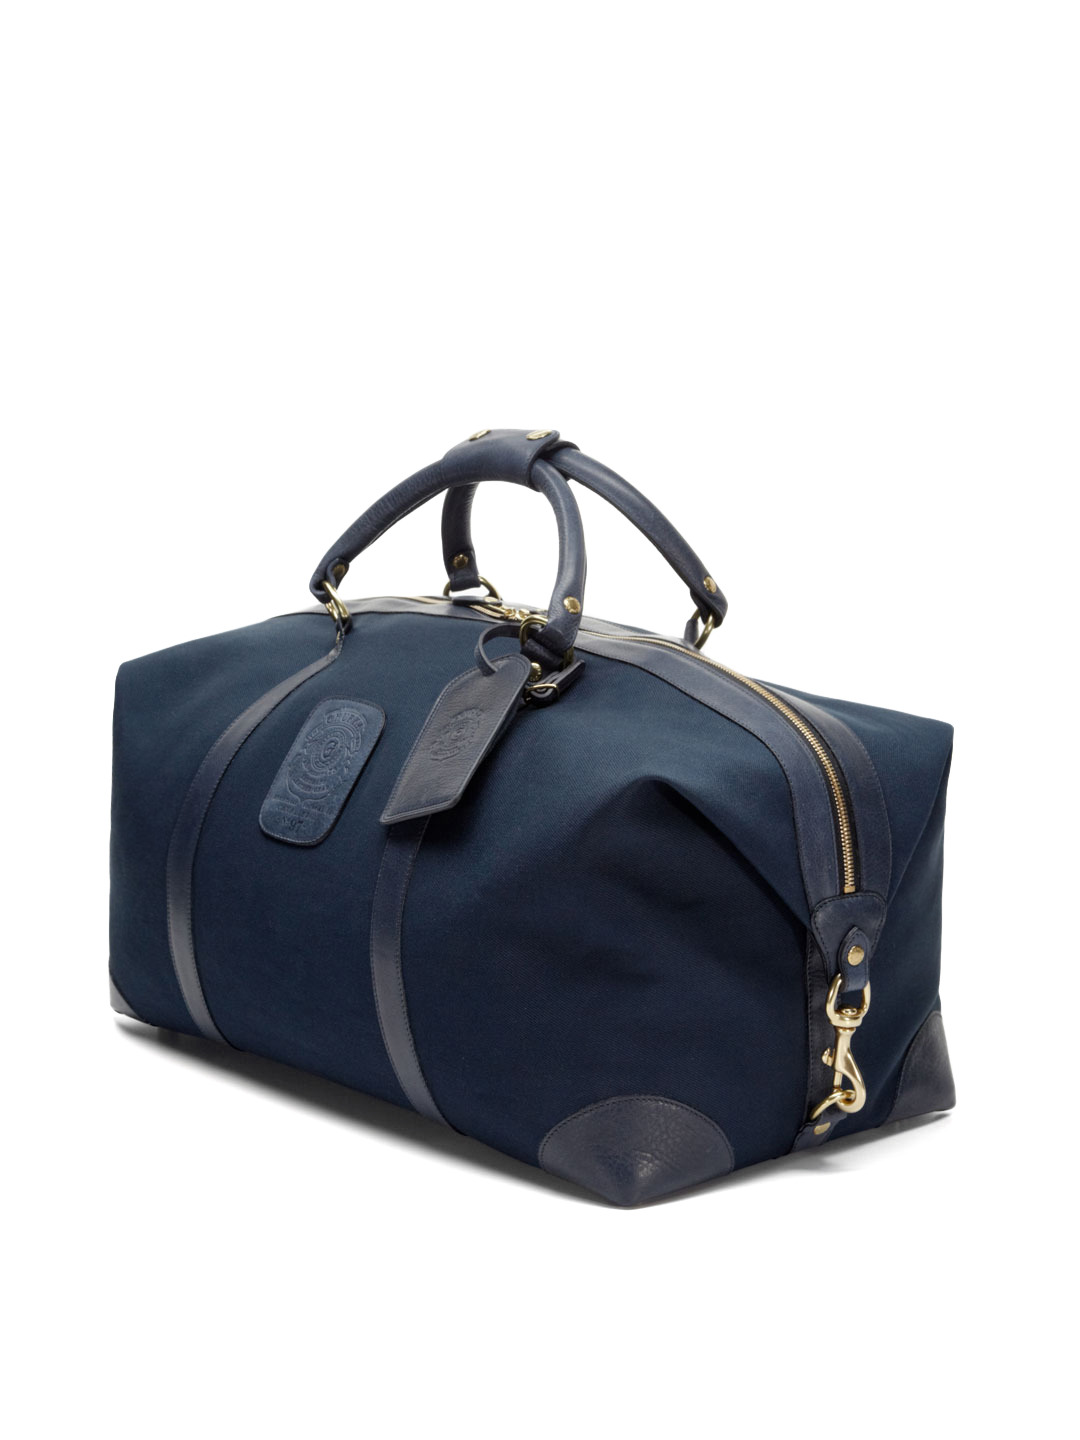 Ghurka Cavalier II Weekender Bag